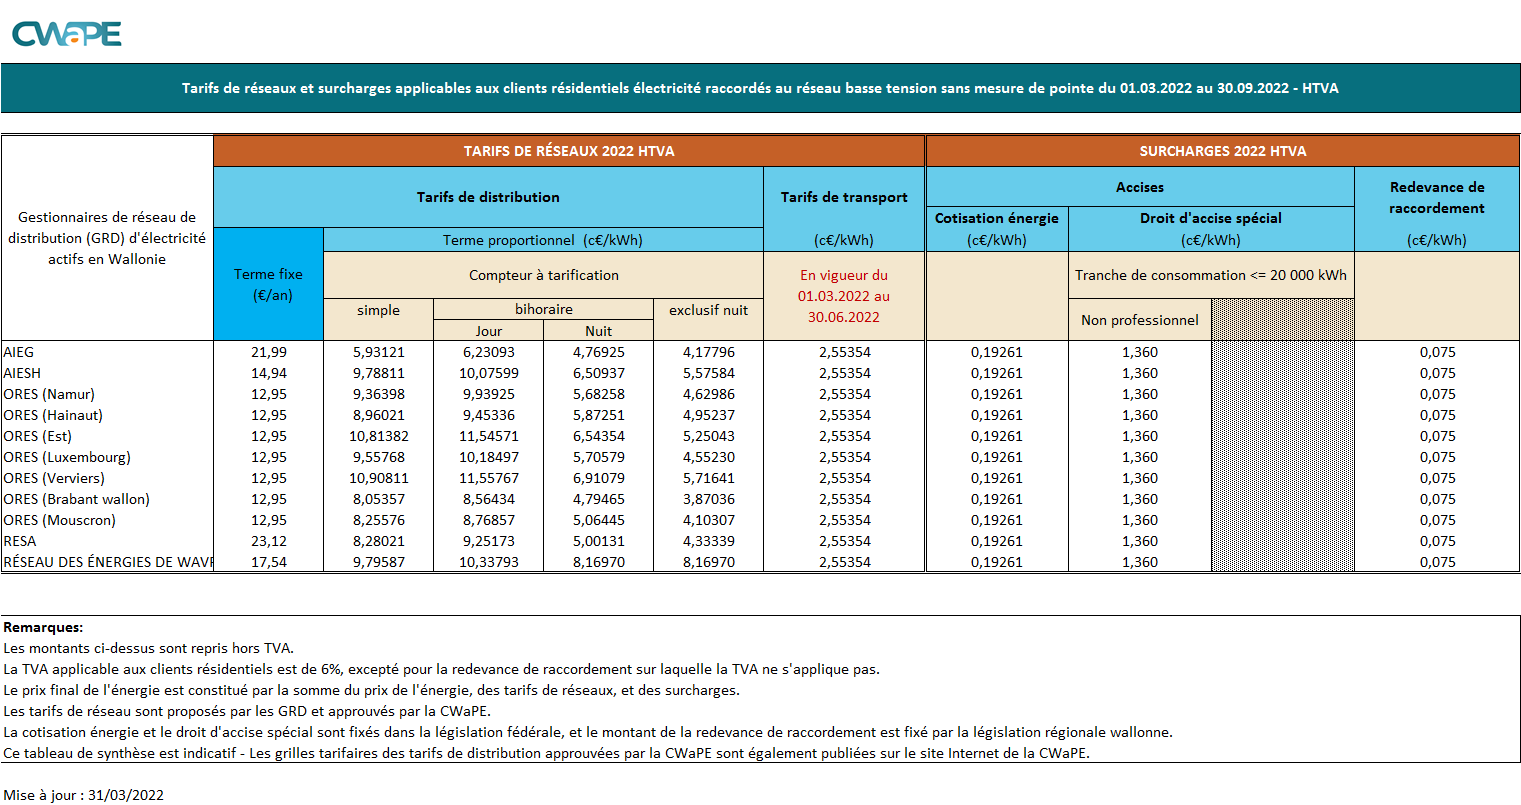 Synthèse des tarifs de distribution d'électricité 01.03.2022-30.09.2022 HTVA